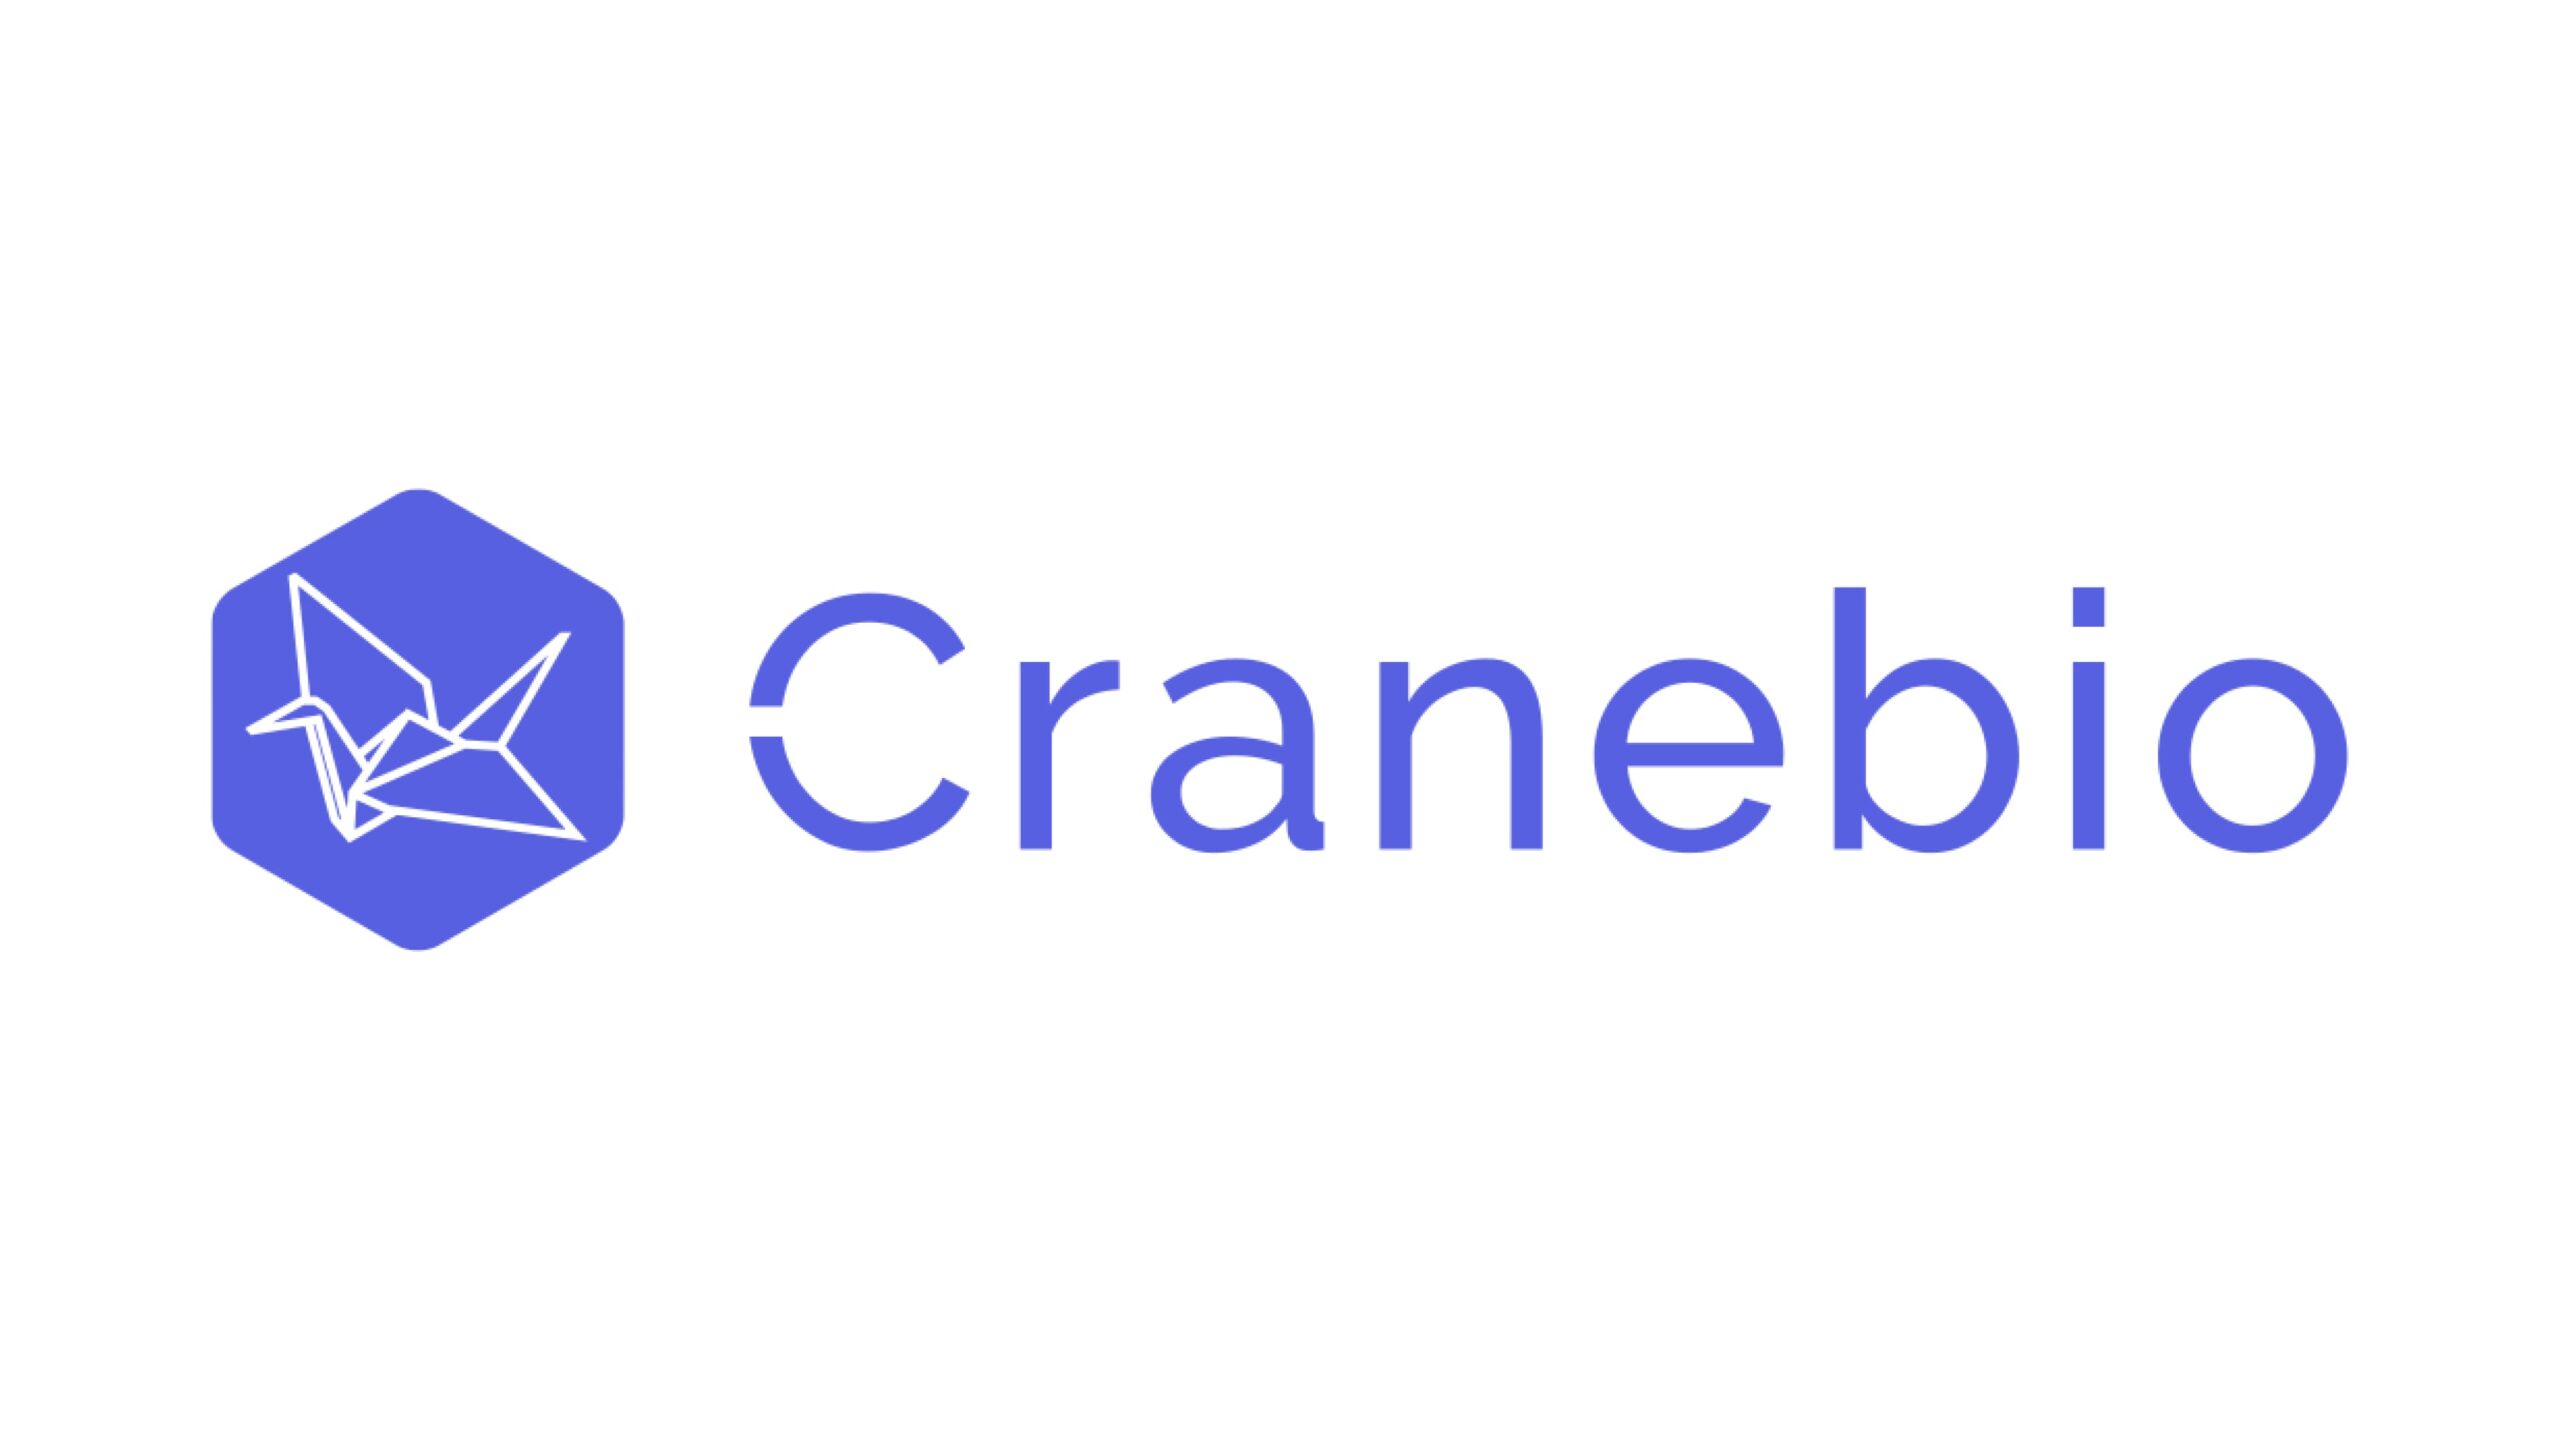 Cranebio株式会社がシリーズAラウンドにて2.5億円の資金調達を実施